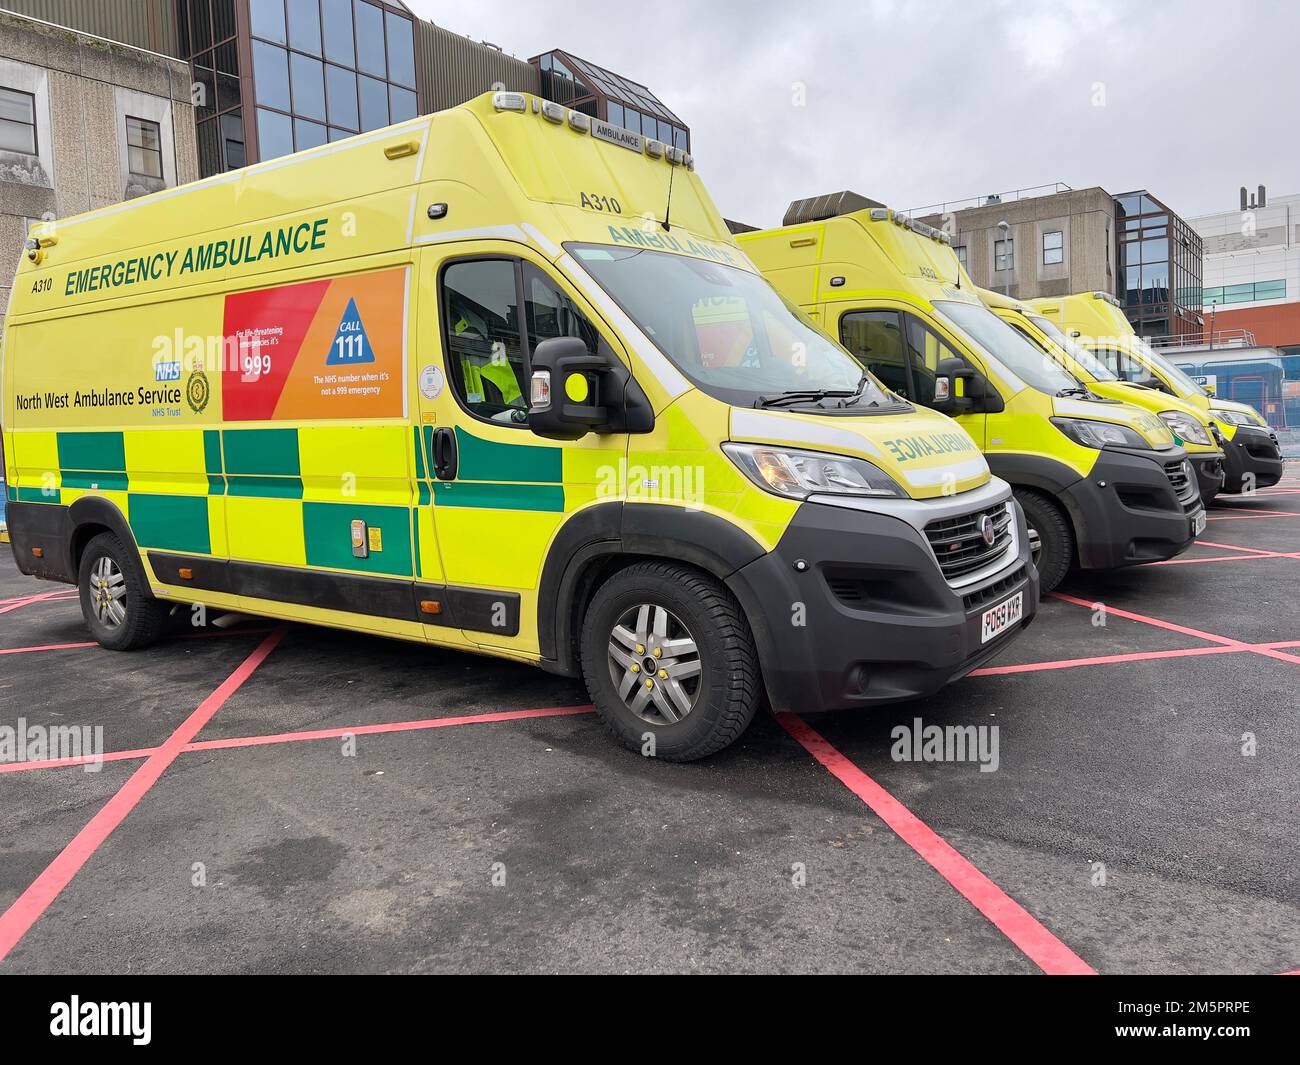 Row of Ambulances Stock Photo